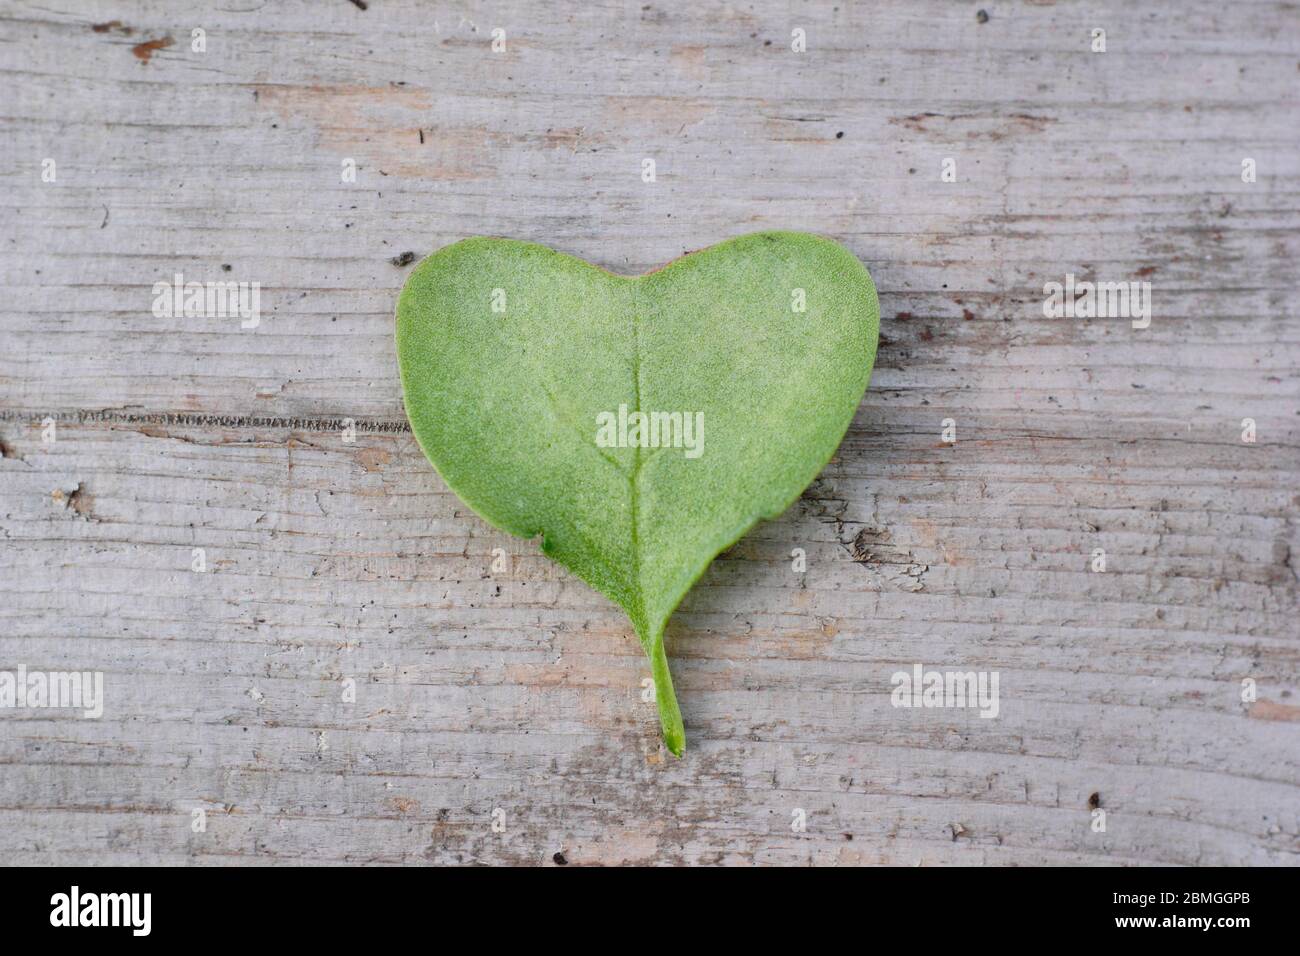 Hoja en forma de corazón de una planta joven de rábano Foto de stock